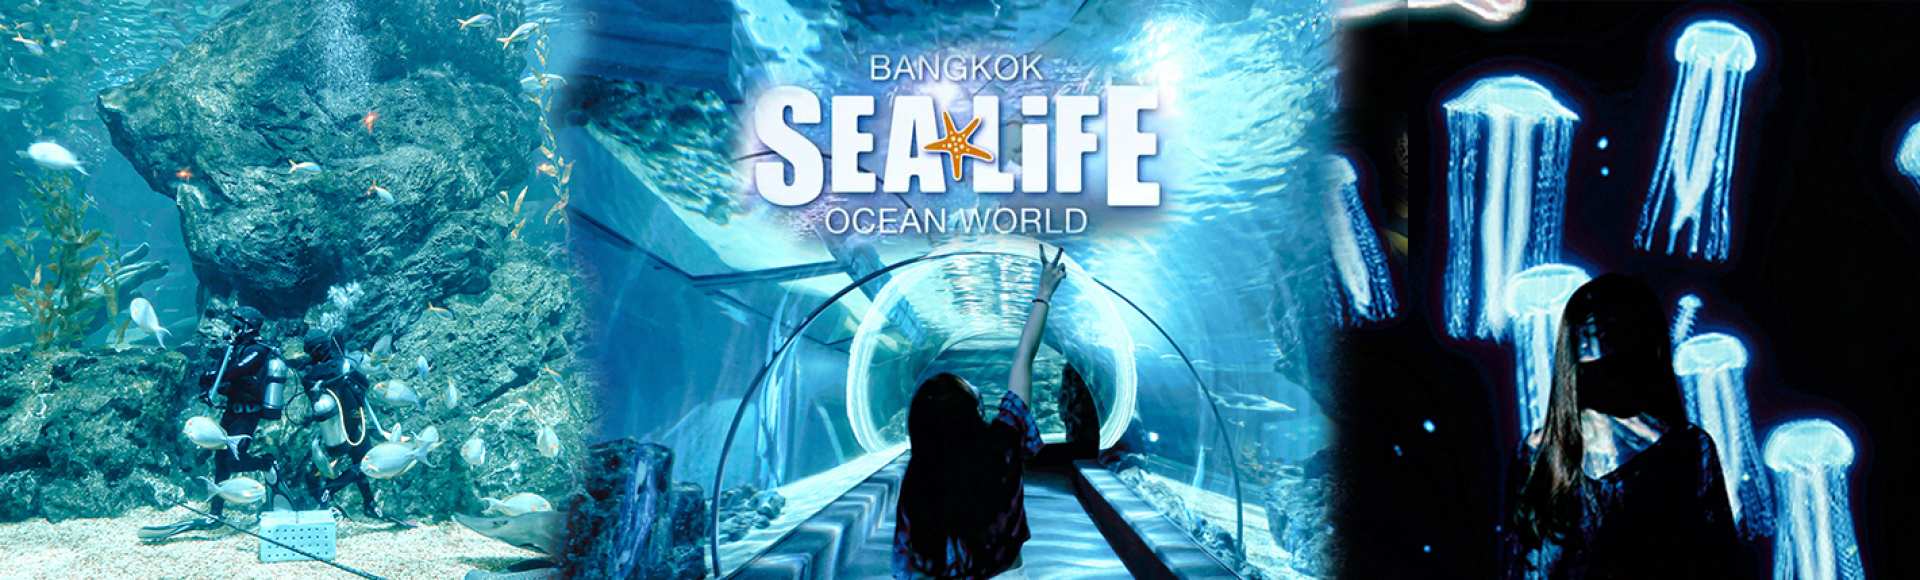 泰國-曼谷暹羅海洋世界和杜莎夫人蠟像館門票| 限時優惠中